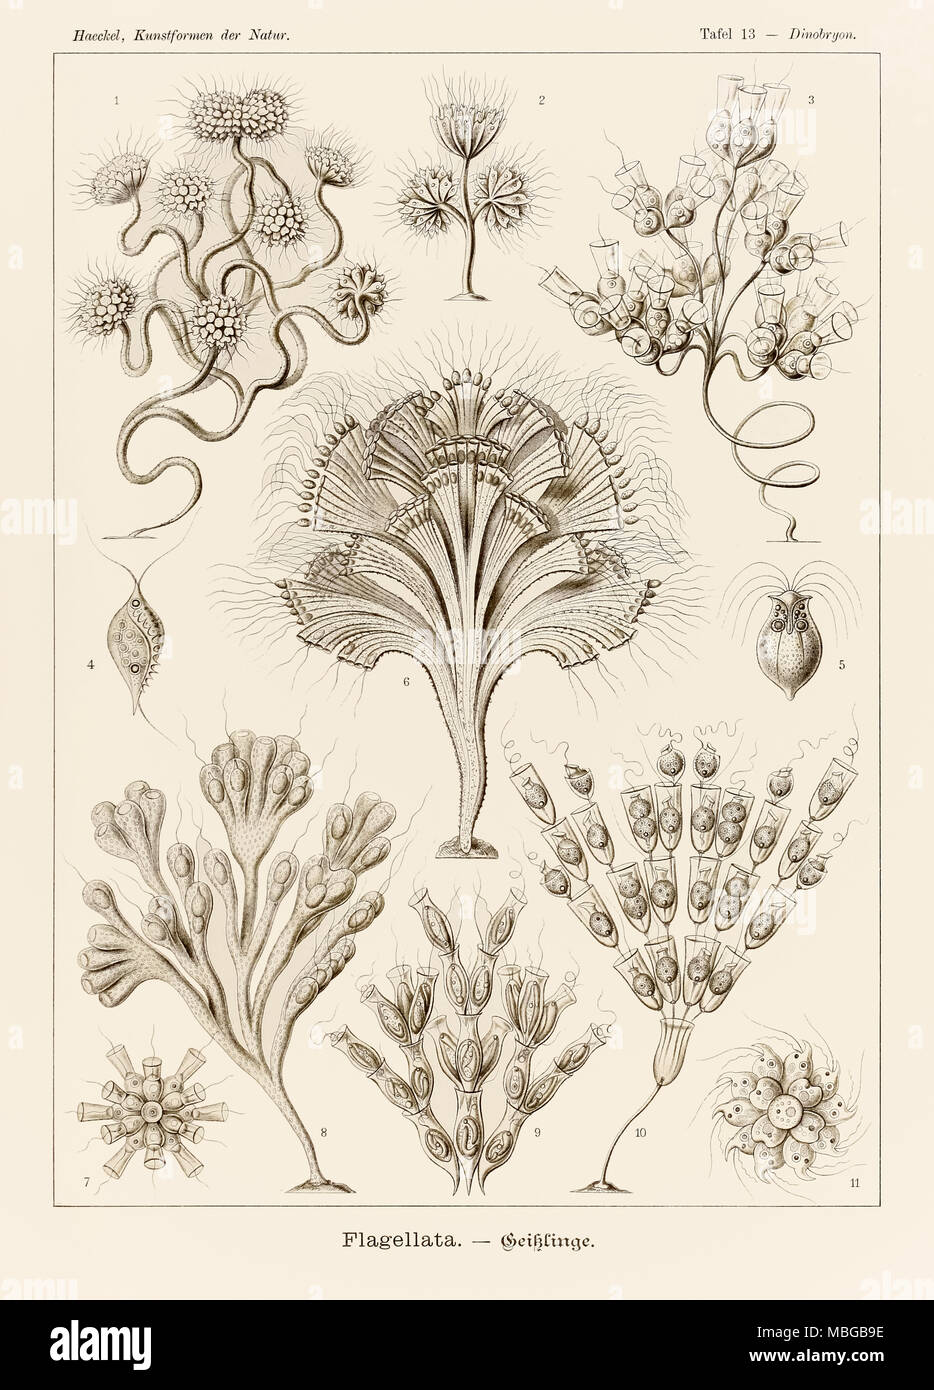 Platte 13 Dinobryon Flagellata von 'Kunstformen der Natur' (Kunstformen in der Natur), illustriert von Ernst Haeckel (1834-1919). Weitere Informationen finden Sie unten. Stockfoto